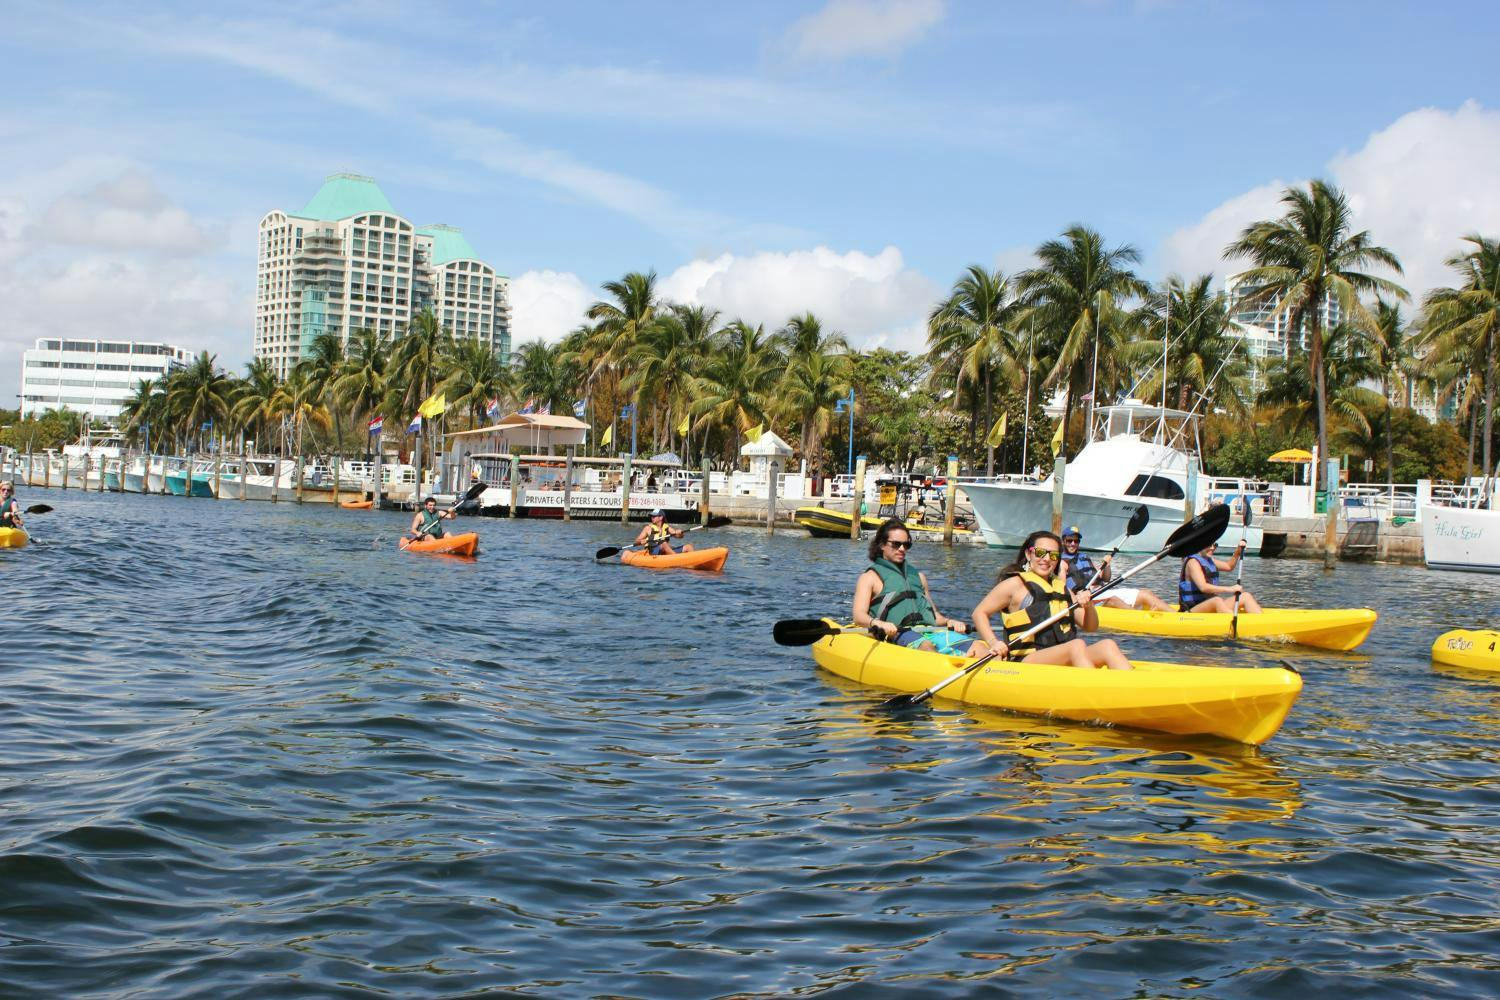 Wypożyczenie kajaka jednoosobowego lub tandemowego na 1 godzinę w zatoce Biscayne w Miami